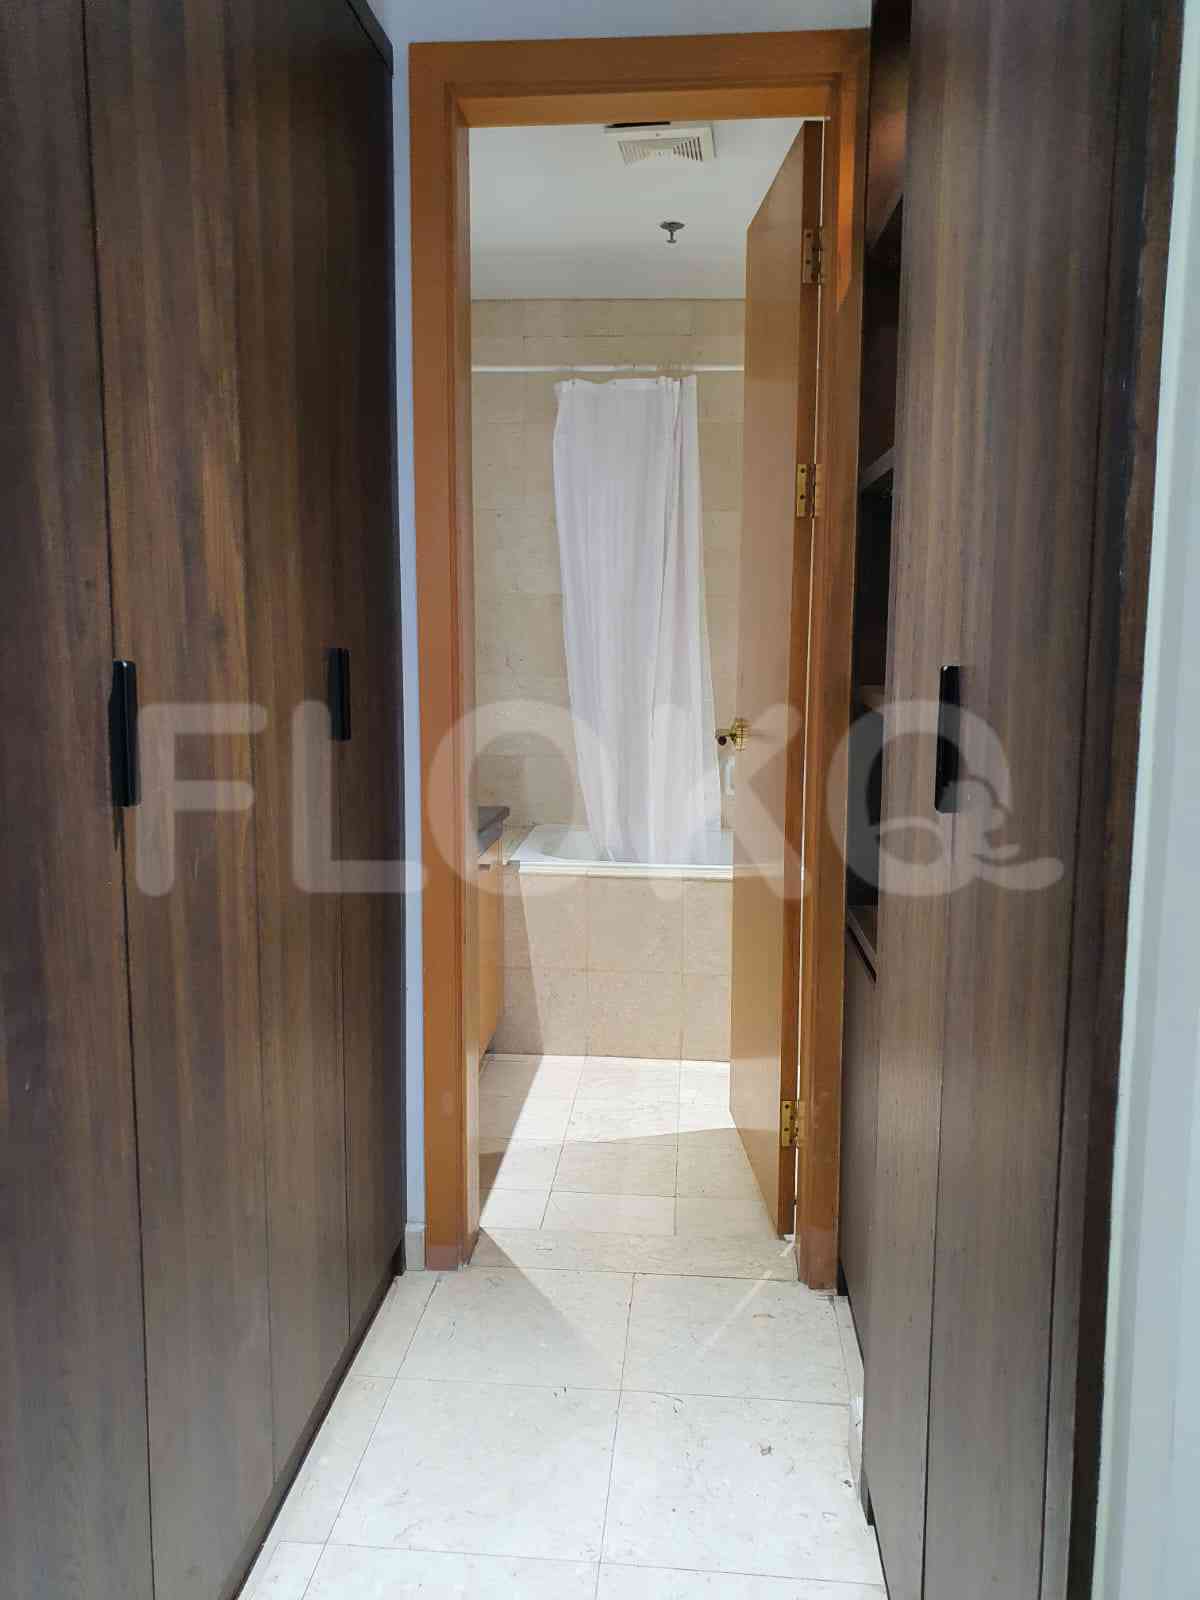 2 Bedroom on 18th Floor for Rent in Pavilion - fscc85 1